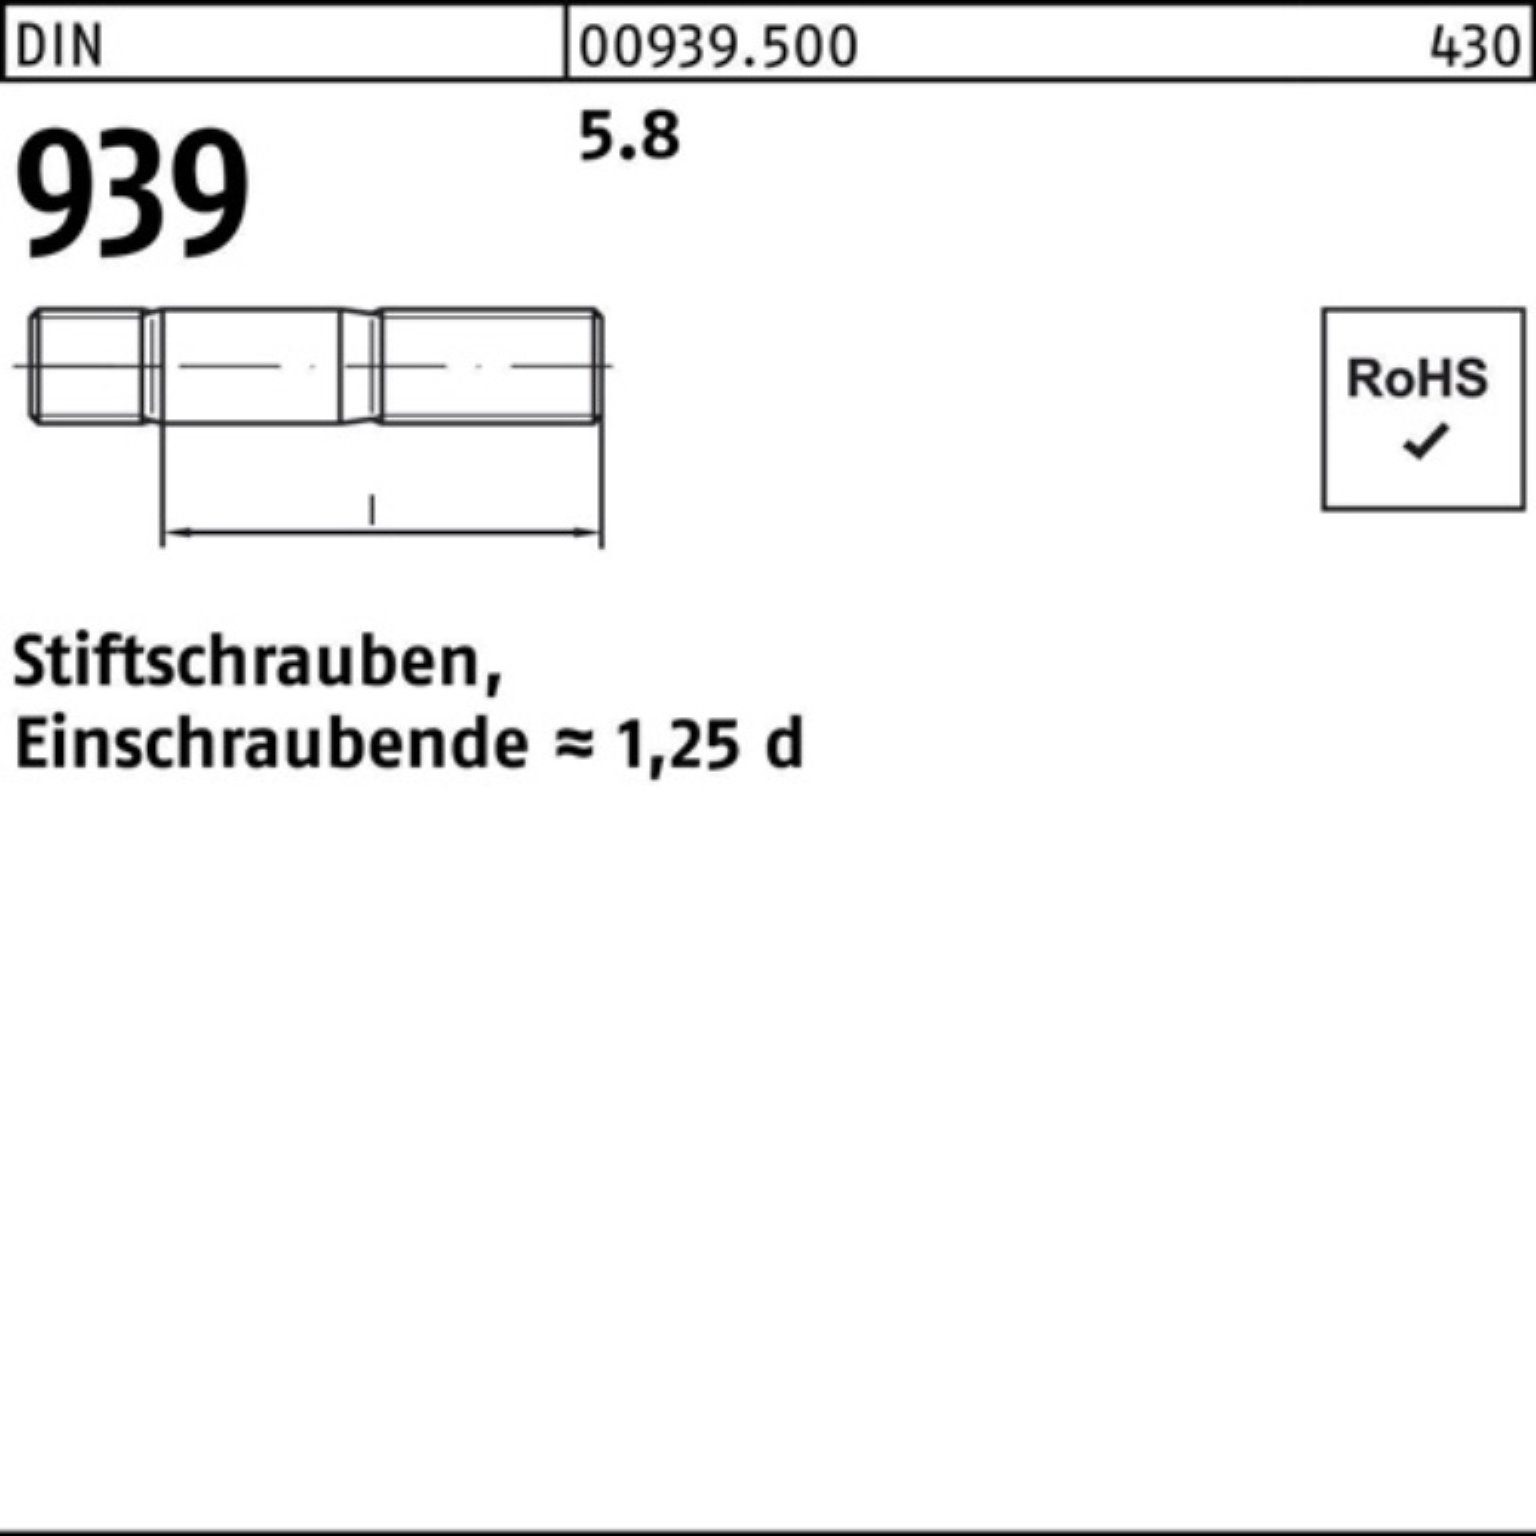 Reyher Stiftschraube 100er Pack DIN S 5.8 939 Stiftschraube 90 Einschraubende=1,25d M8x 100